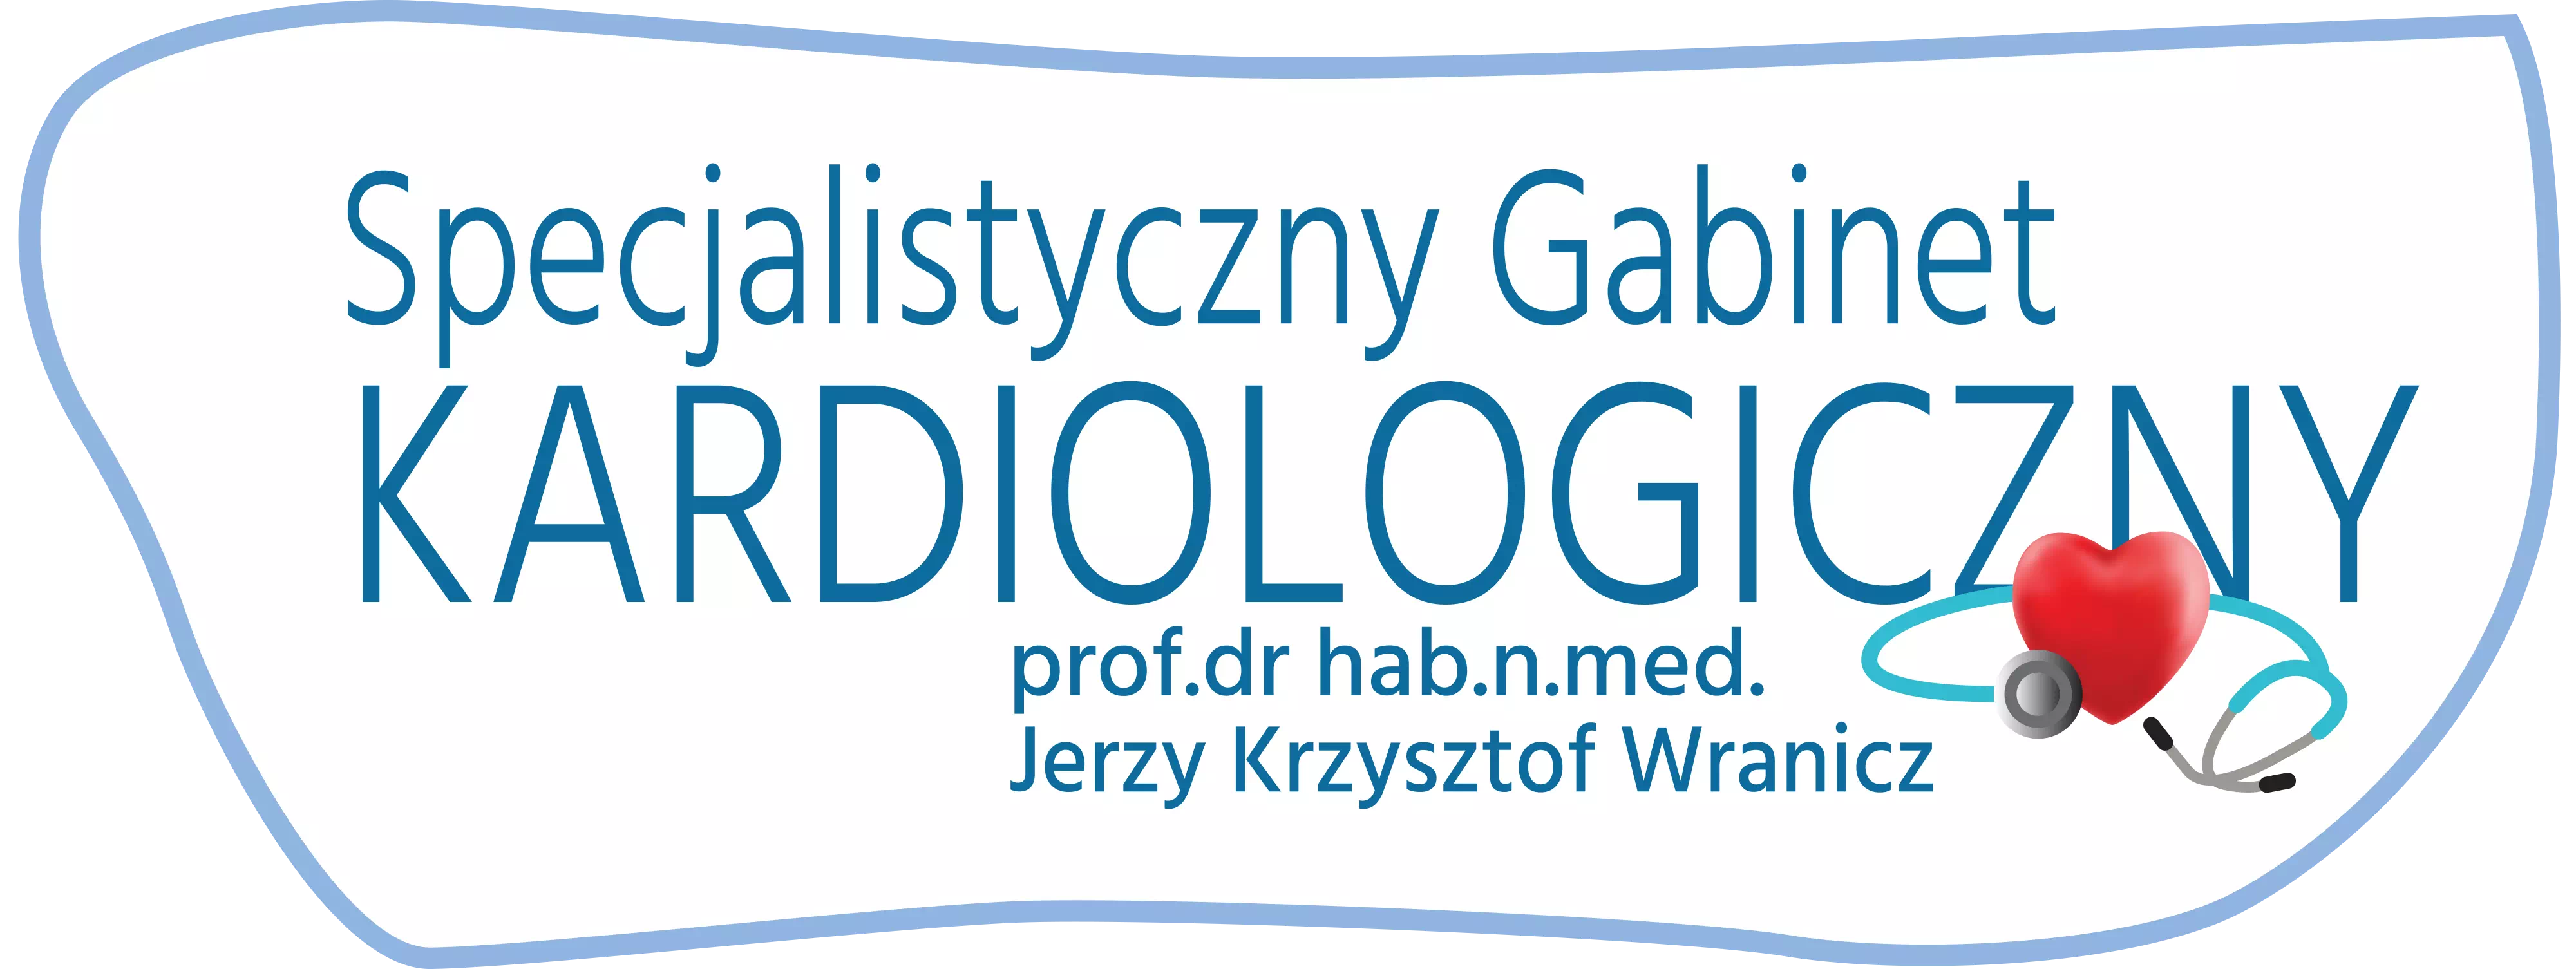 Specjalistyczny gabinet kardiologiczny Jerzy Wranicz